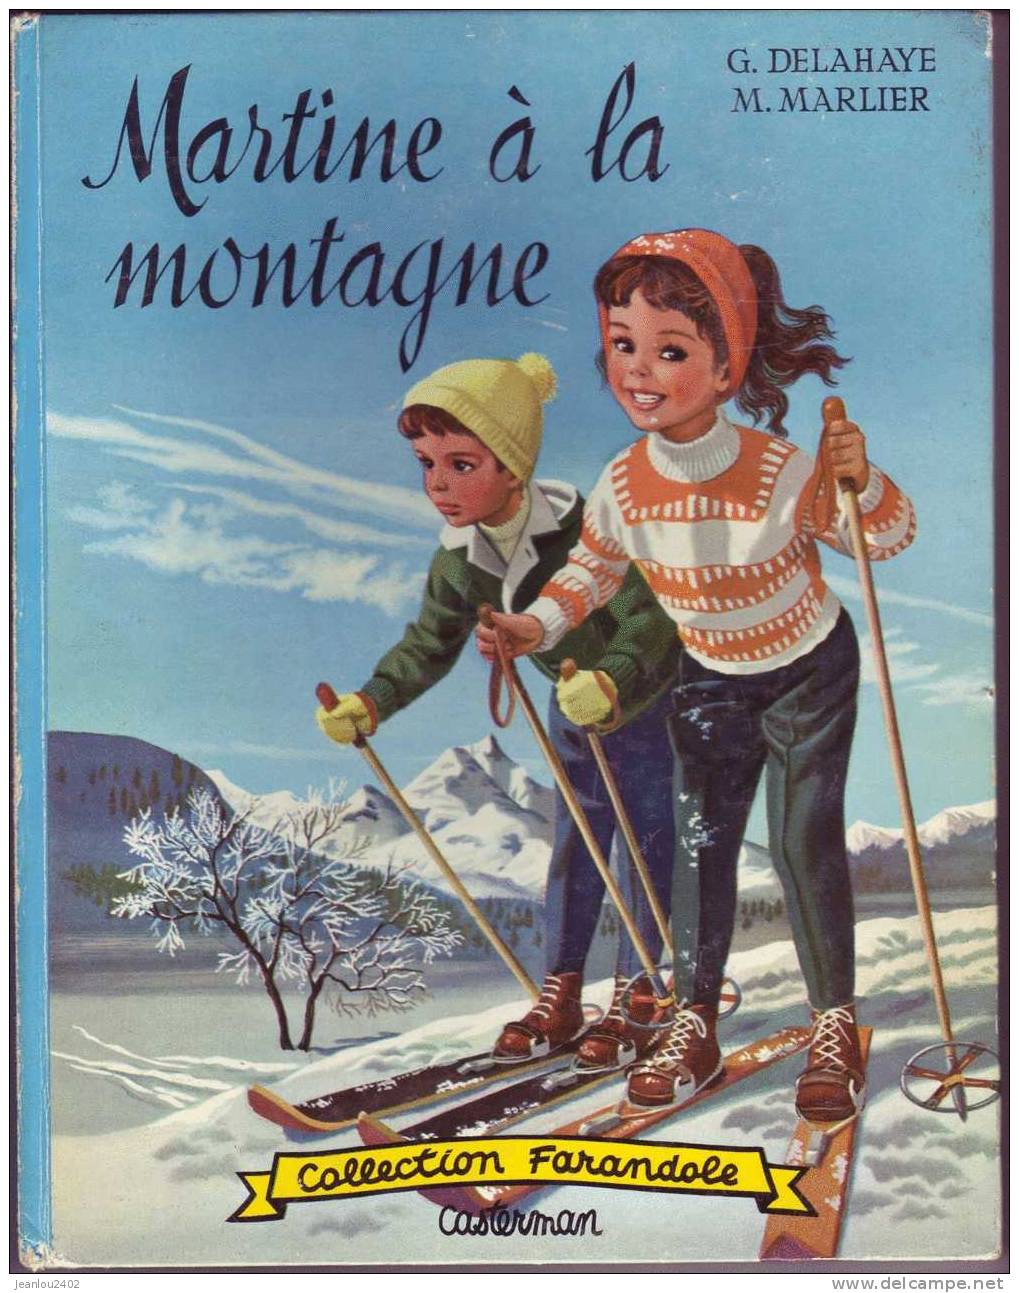 MARTINE A LA MONTAGNE - Martine